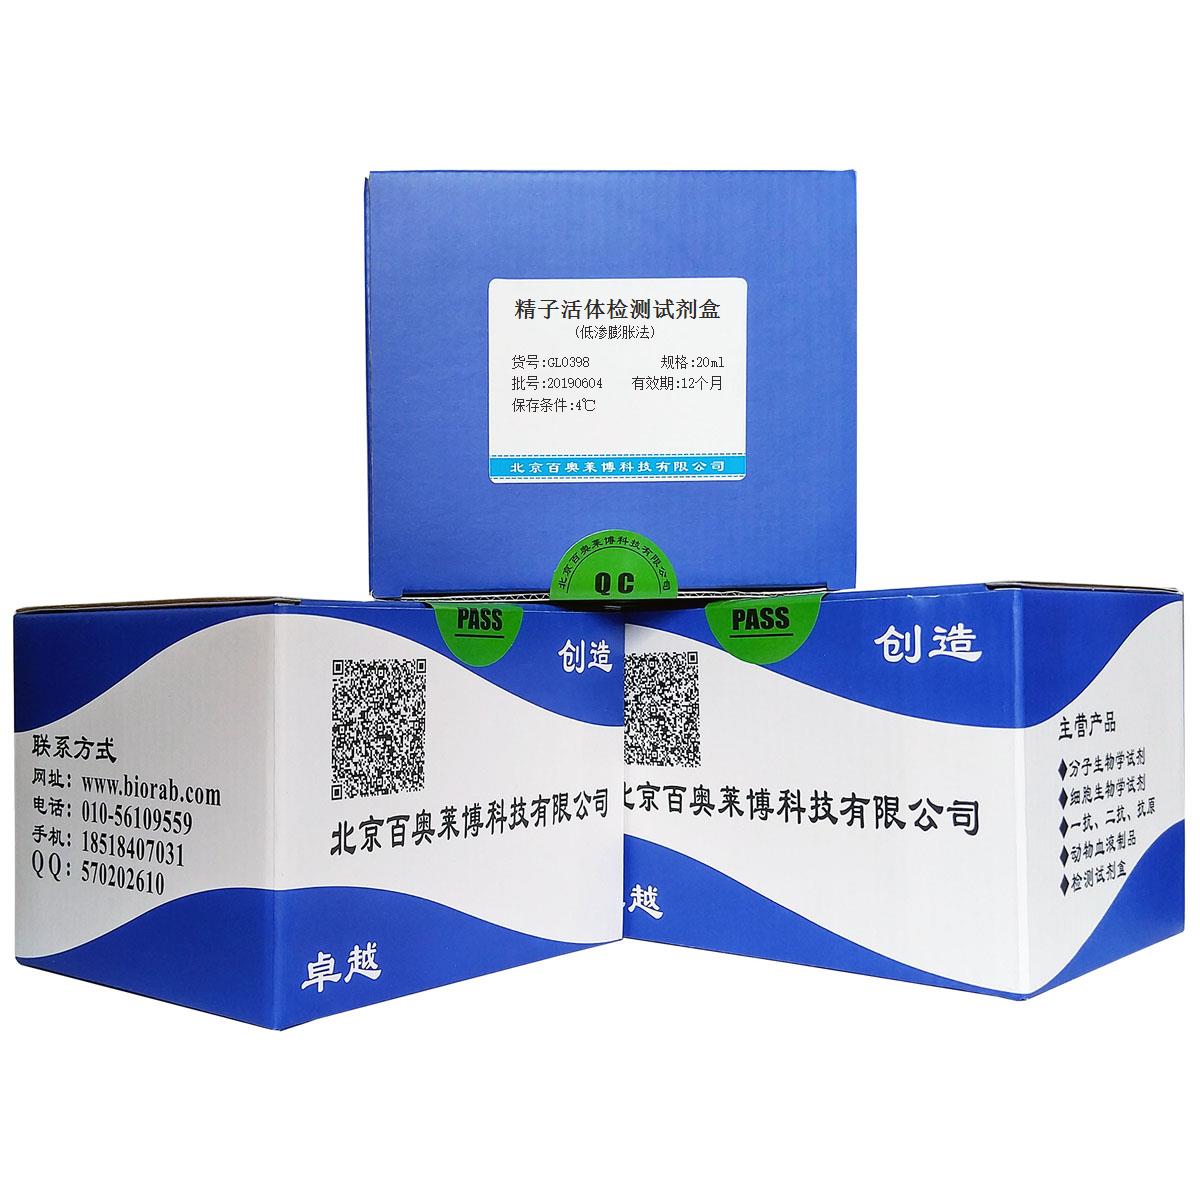 精子活体检测试剂盒(低渗膨胀法)北京供应商